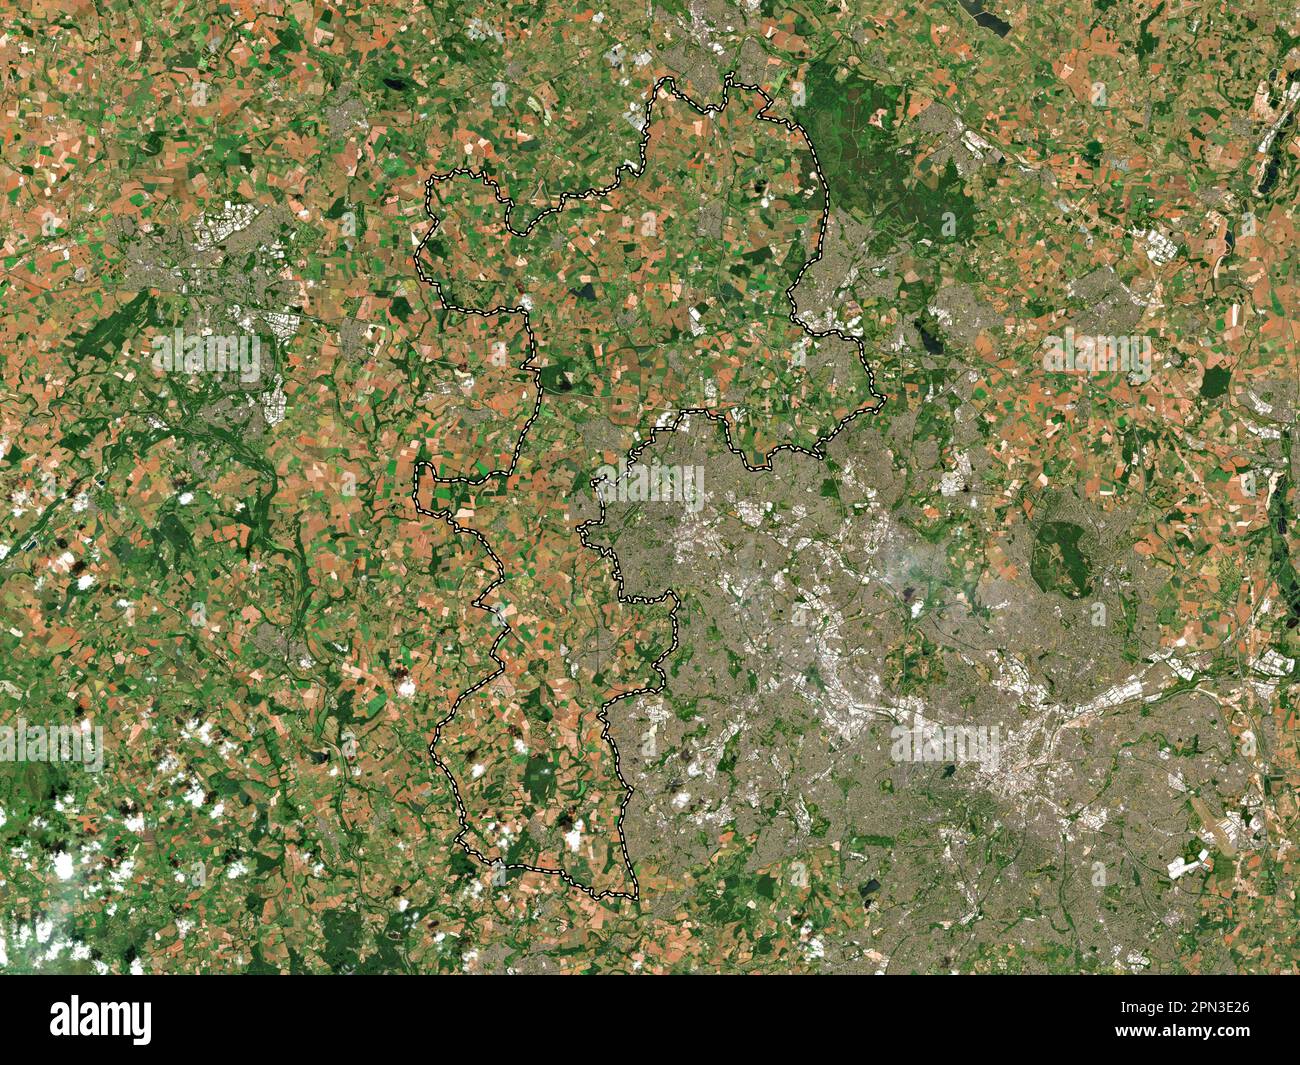 South Staffordshire, nicht-Metropolitan District of England - Großbritannien. Satellitenkarte mit niedriger Auflösung Stockfoto